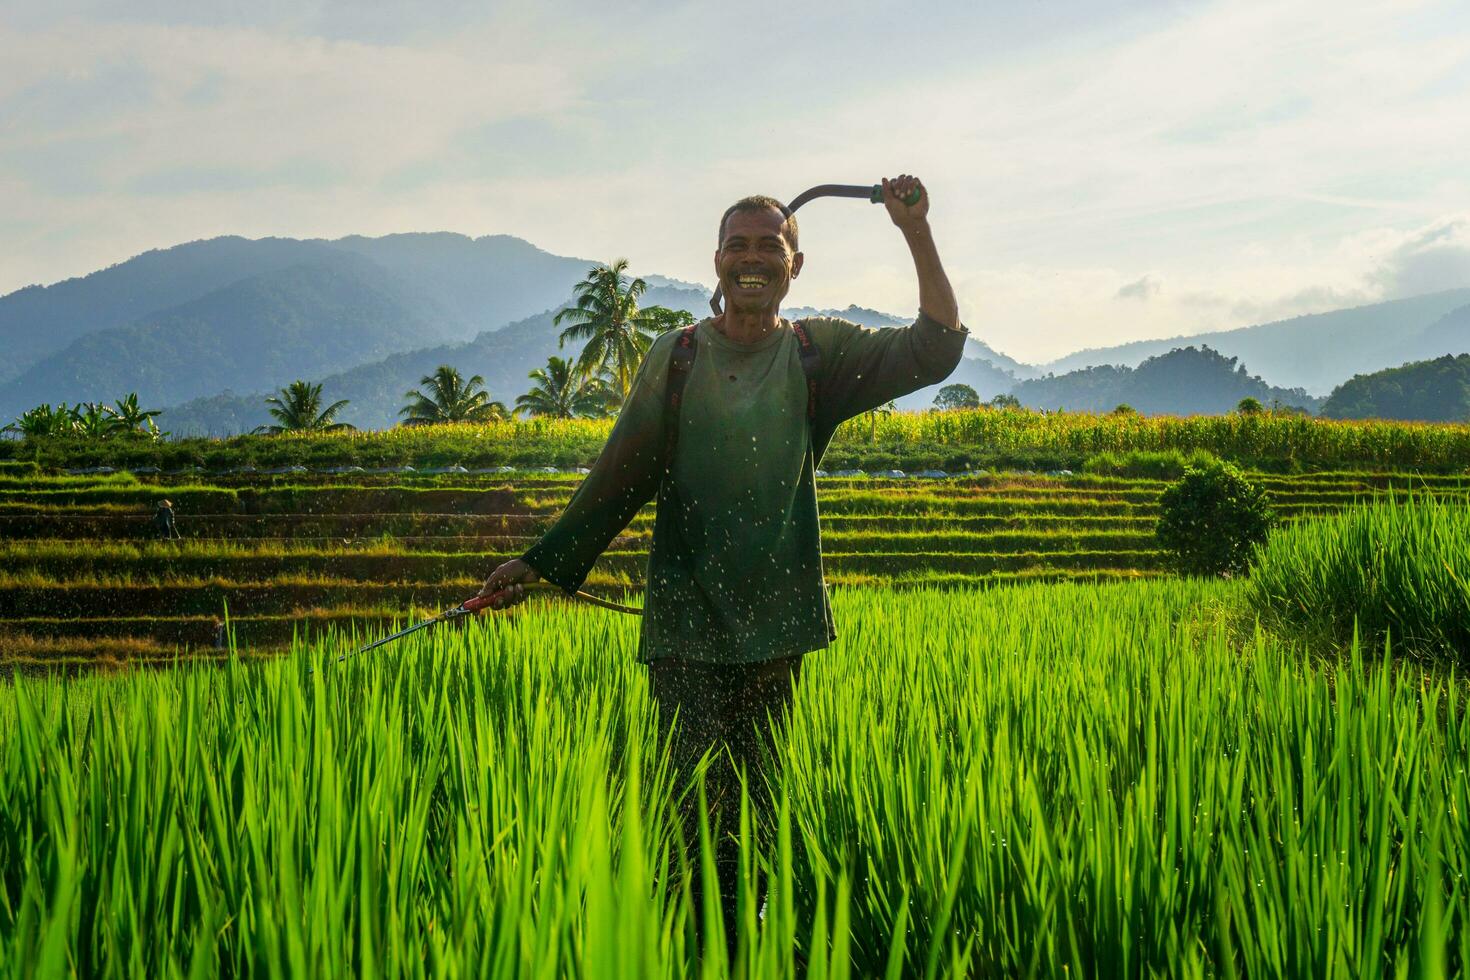 le Activités de Les agriculteurs dans le riz des champs dans le Barisane montagnes, bengkulu, Nord Indonésie photo